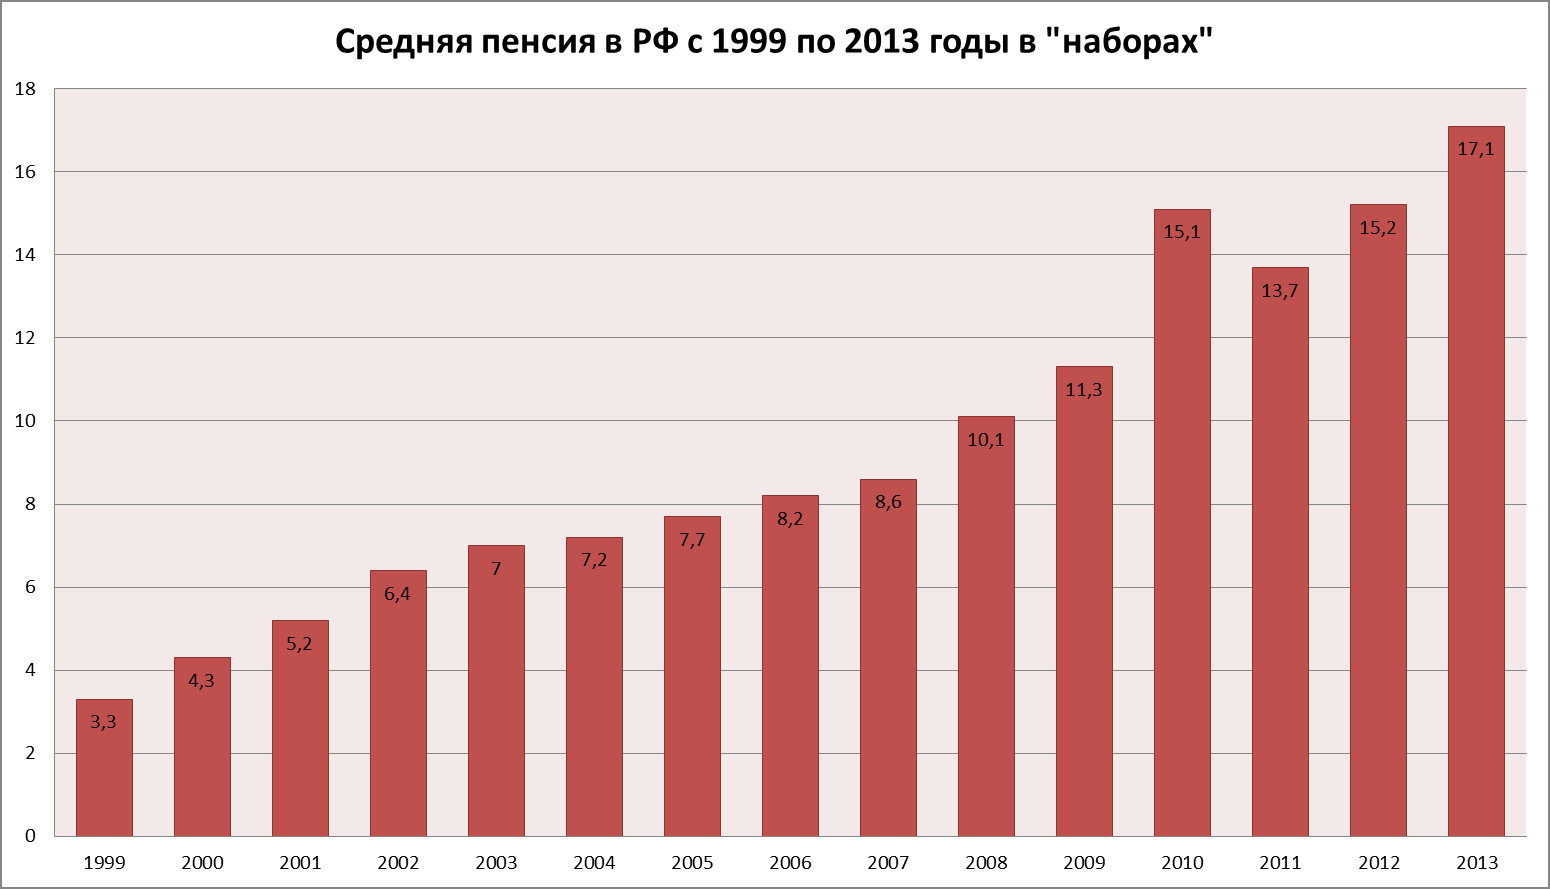 Пенсия 1999 году. Размер пенсии в 1999 году в России. Средний размер пенсии. Средняя пенсия в России график. Размер средней пенсии по годам.